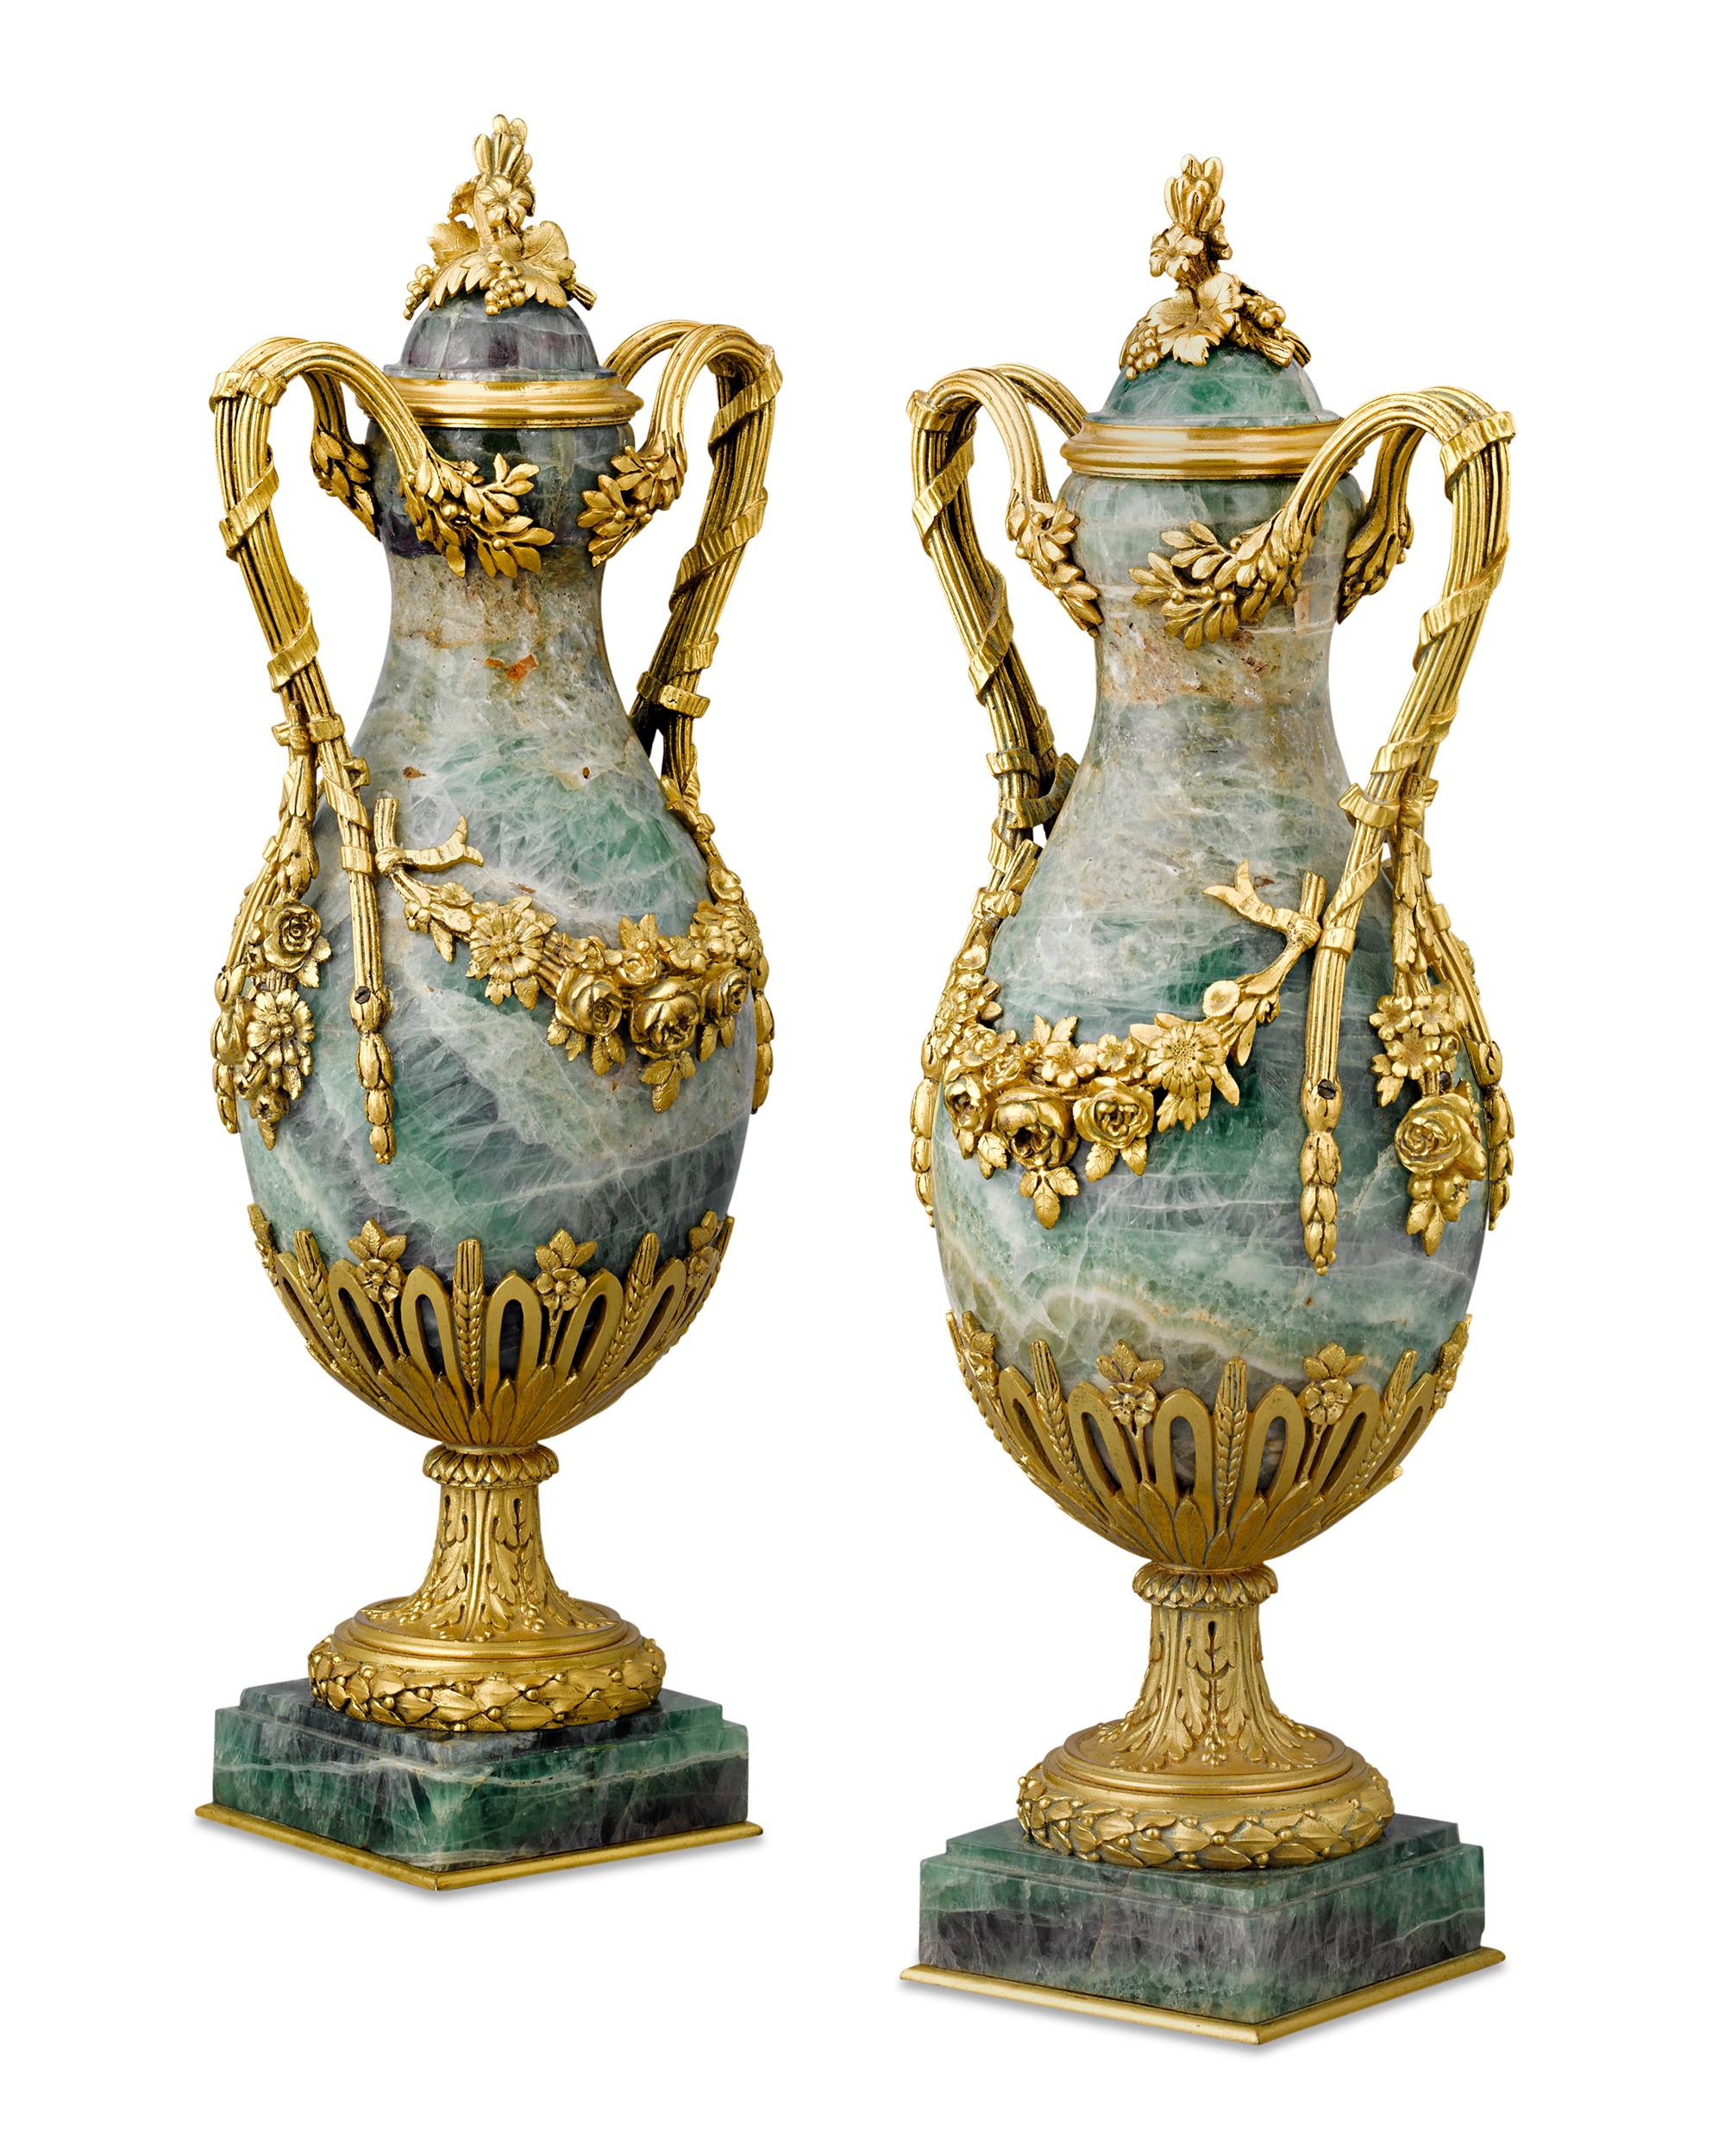 Ces urnes françaises Napoléon III illustrent les styles élaborés du renouveau qui ont dominé le Second Empire. Les vases en fluorine de forme balustre sont ornés de montures en bronze doré en forme d'anses jumelles et de guirlandes de fleurs et de